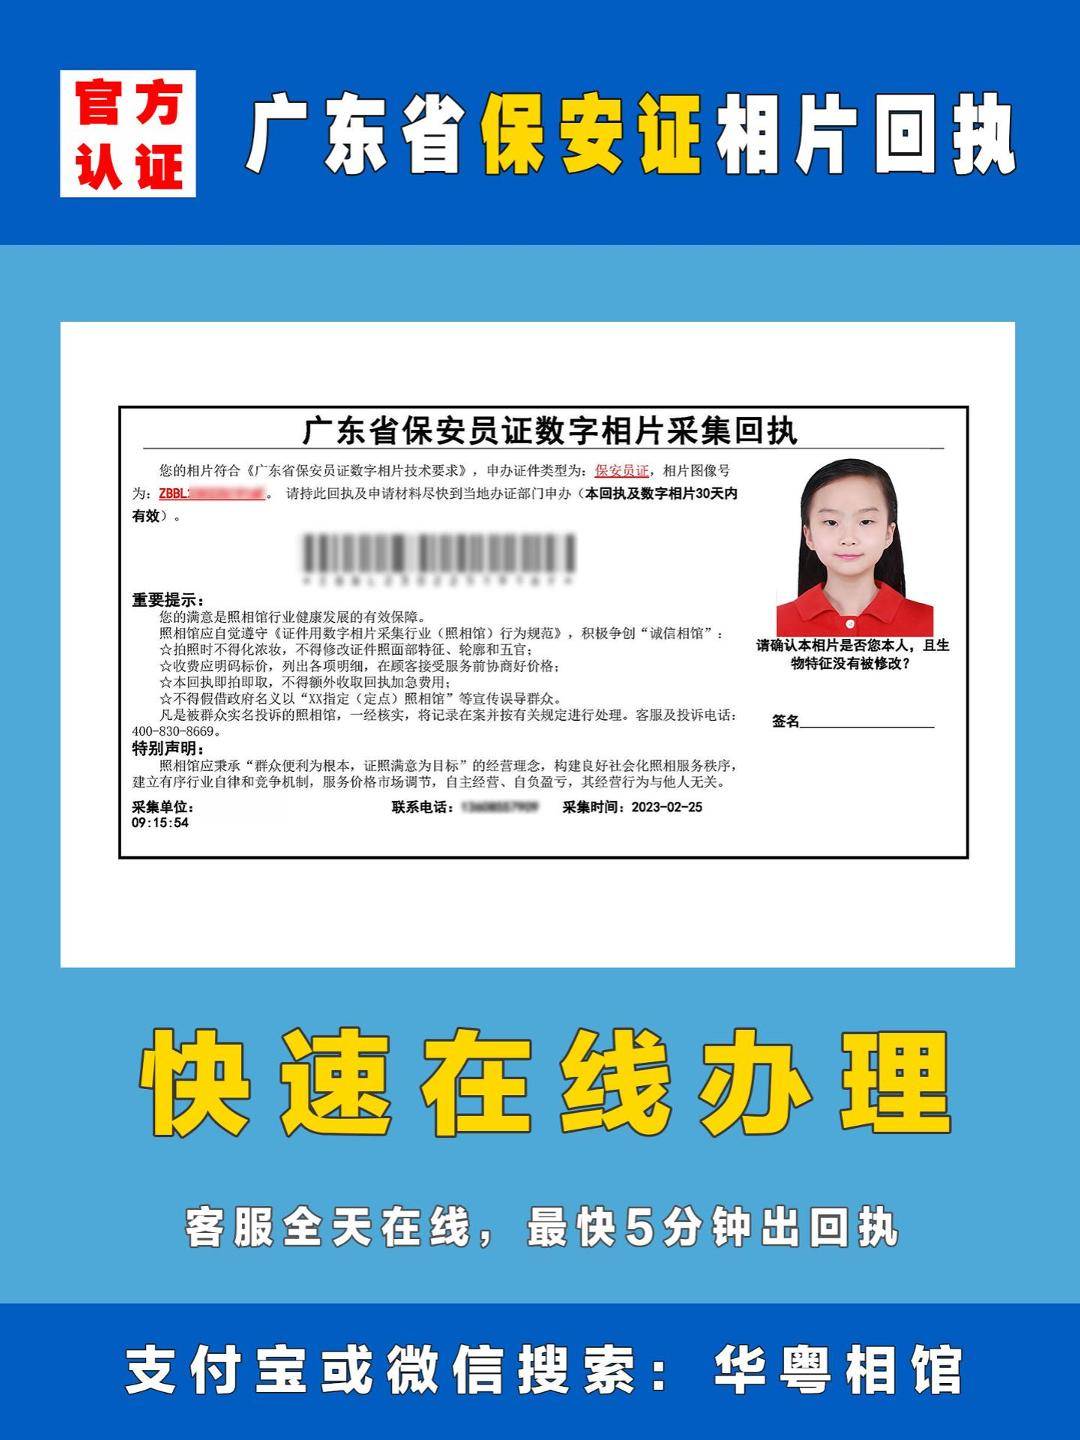 想成为广东的保安员吗？先来看看如何获得保安员证的照片回执吧！